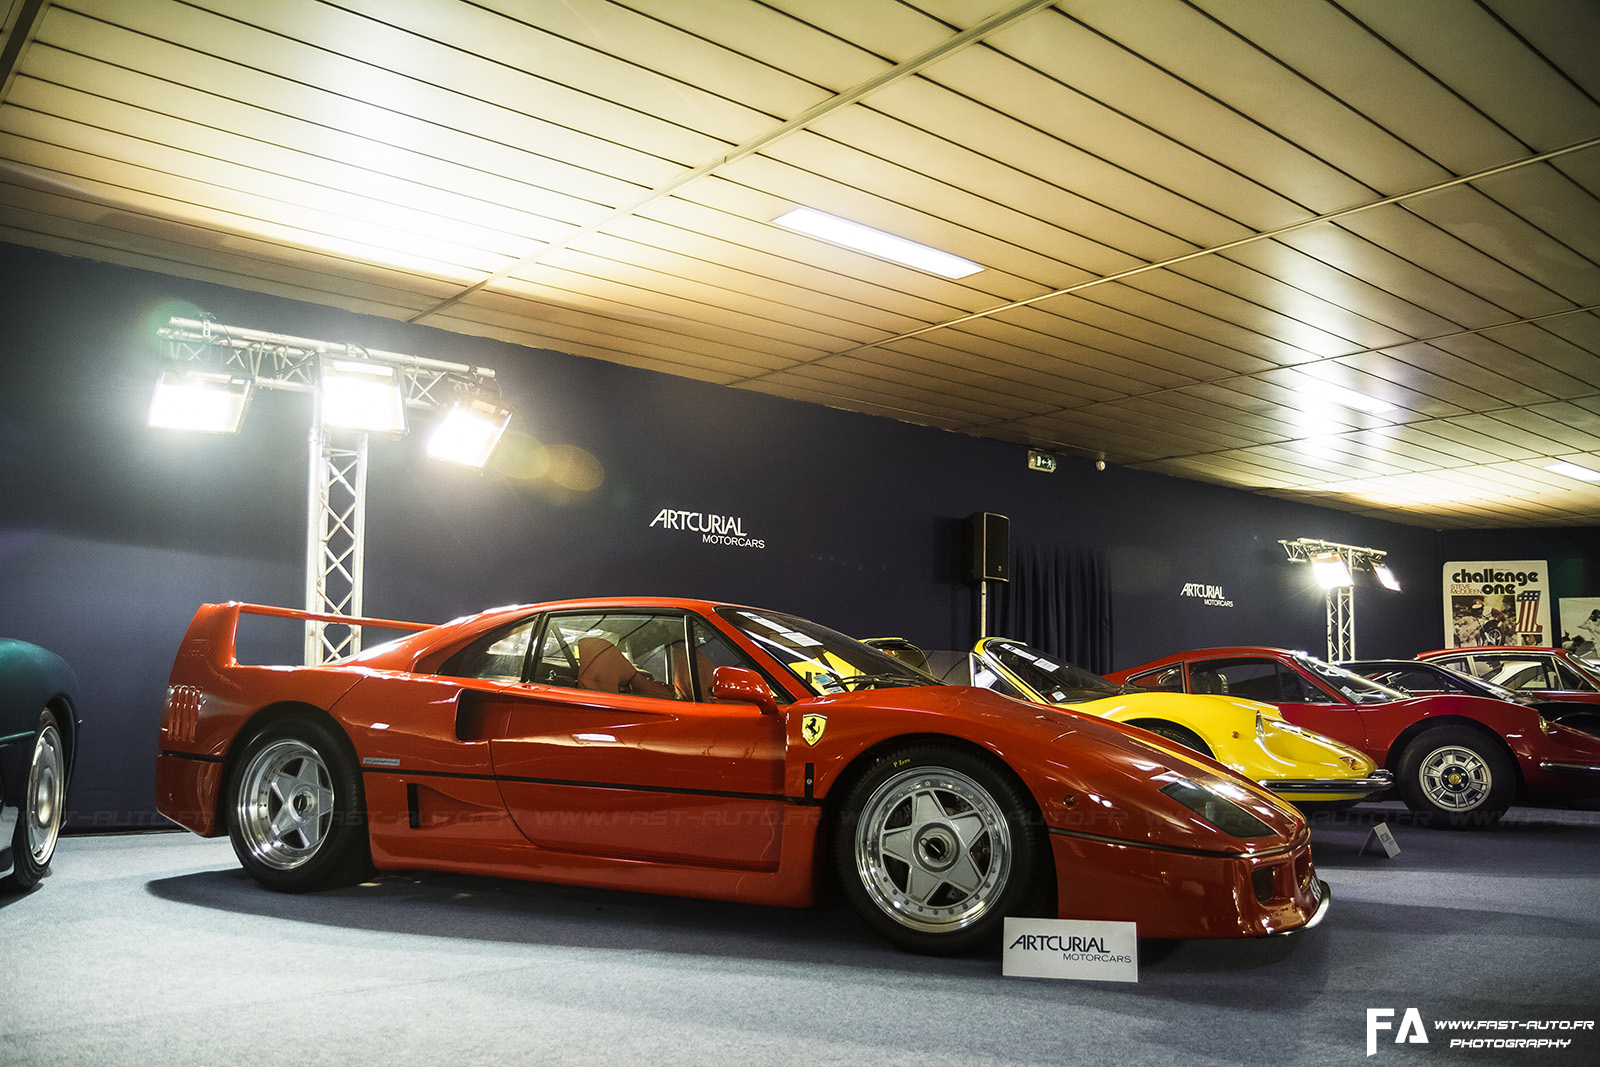 2-Ferrari-F40-automobile-sur-les-champs-artcurial.jpg